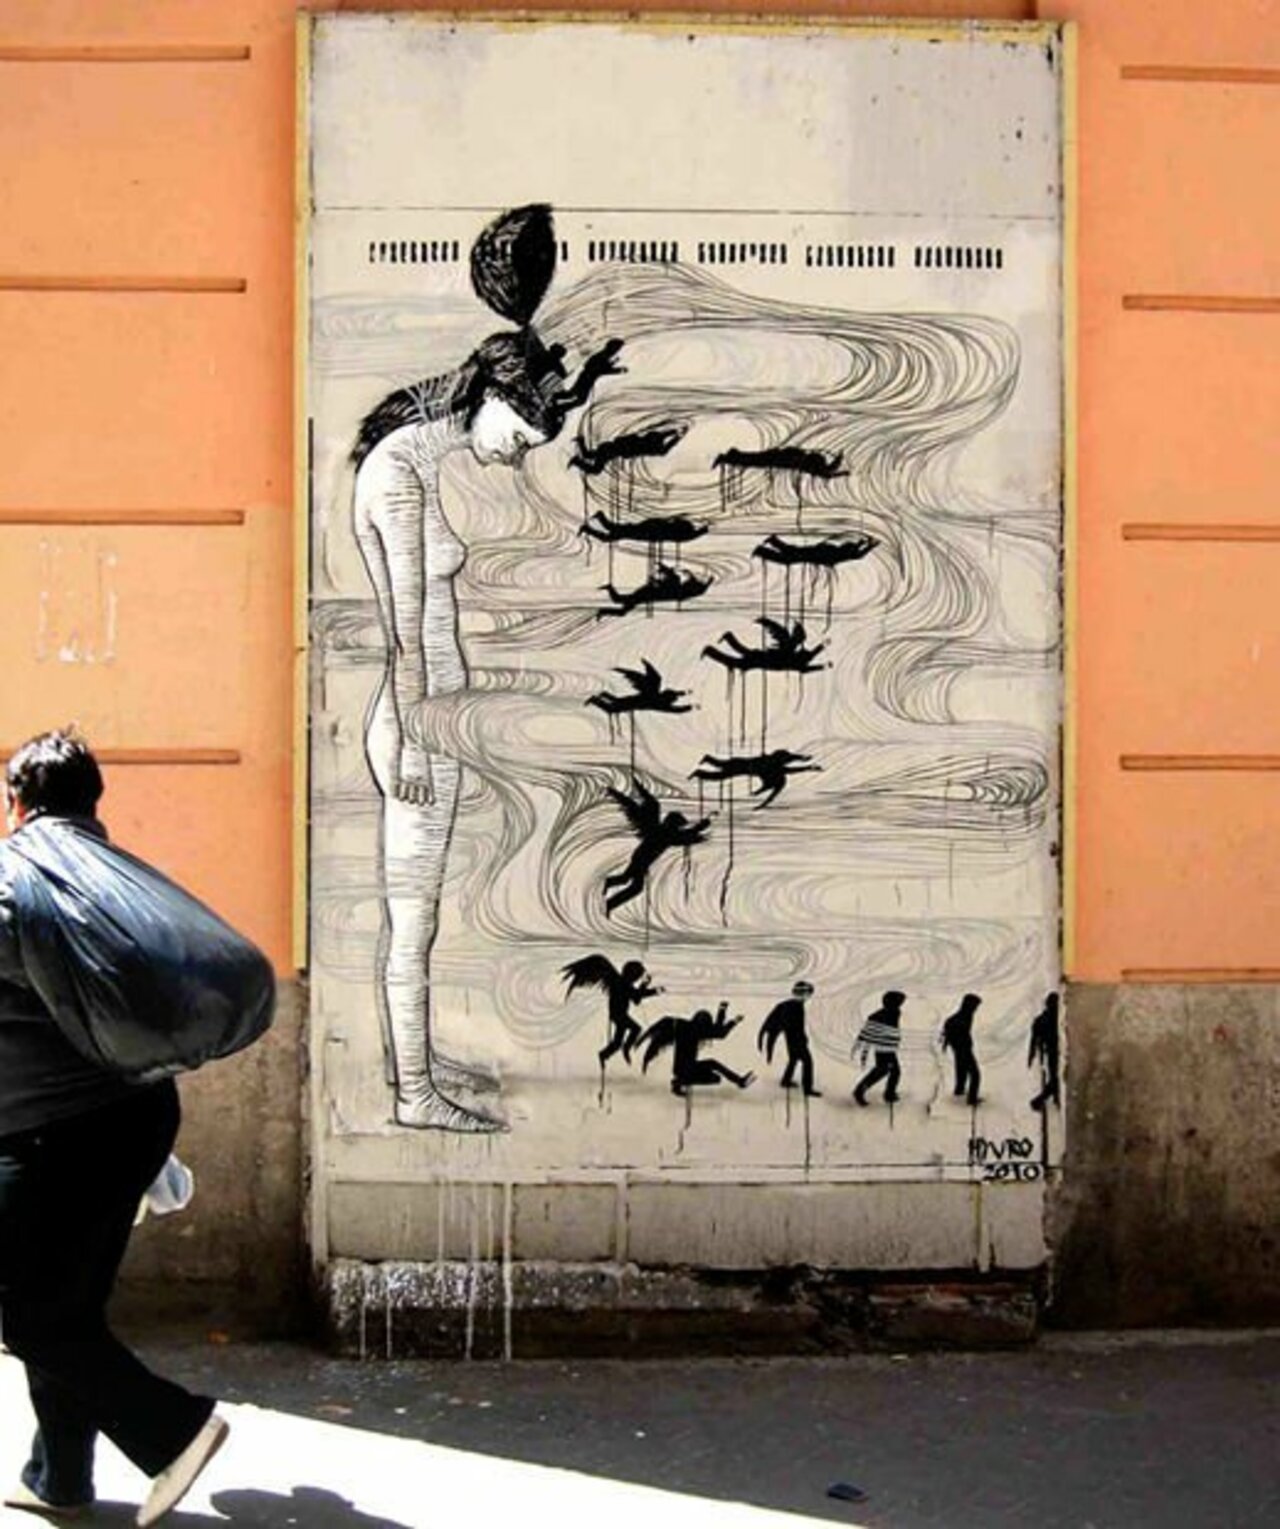 New street art by Hyuro Spain#streetart #mural #graffiti #art https://t.co/1EDhGKKLWZ